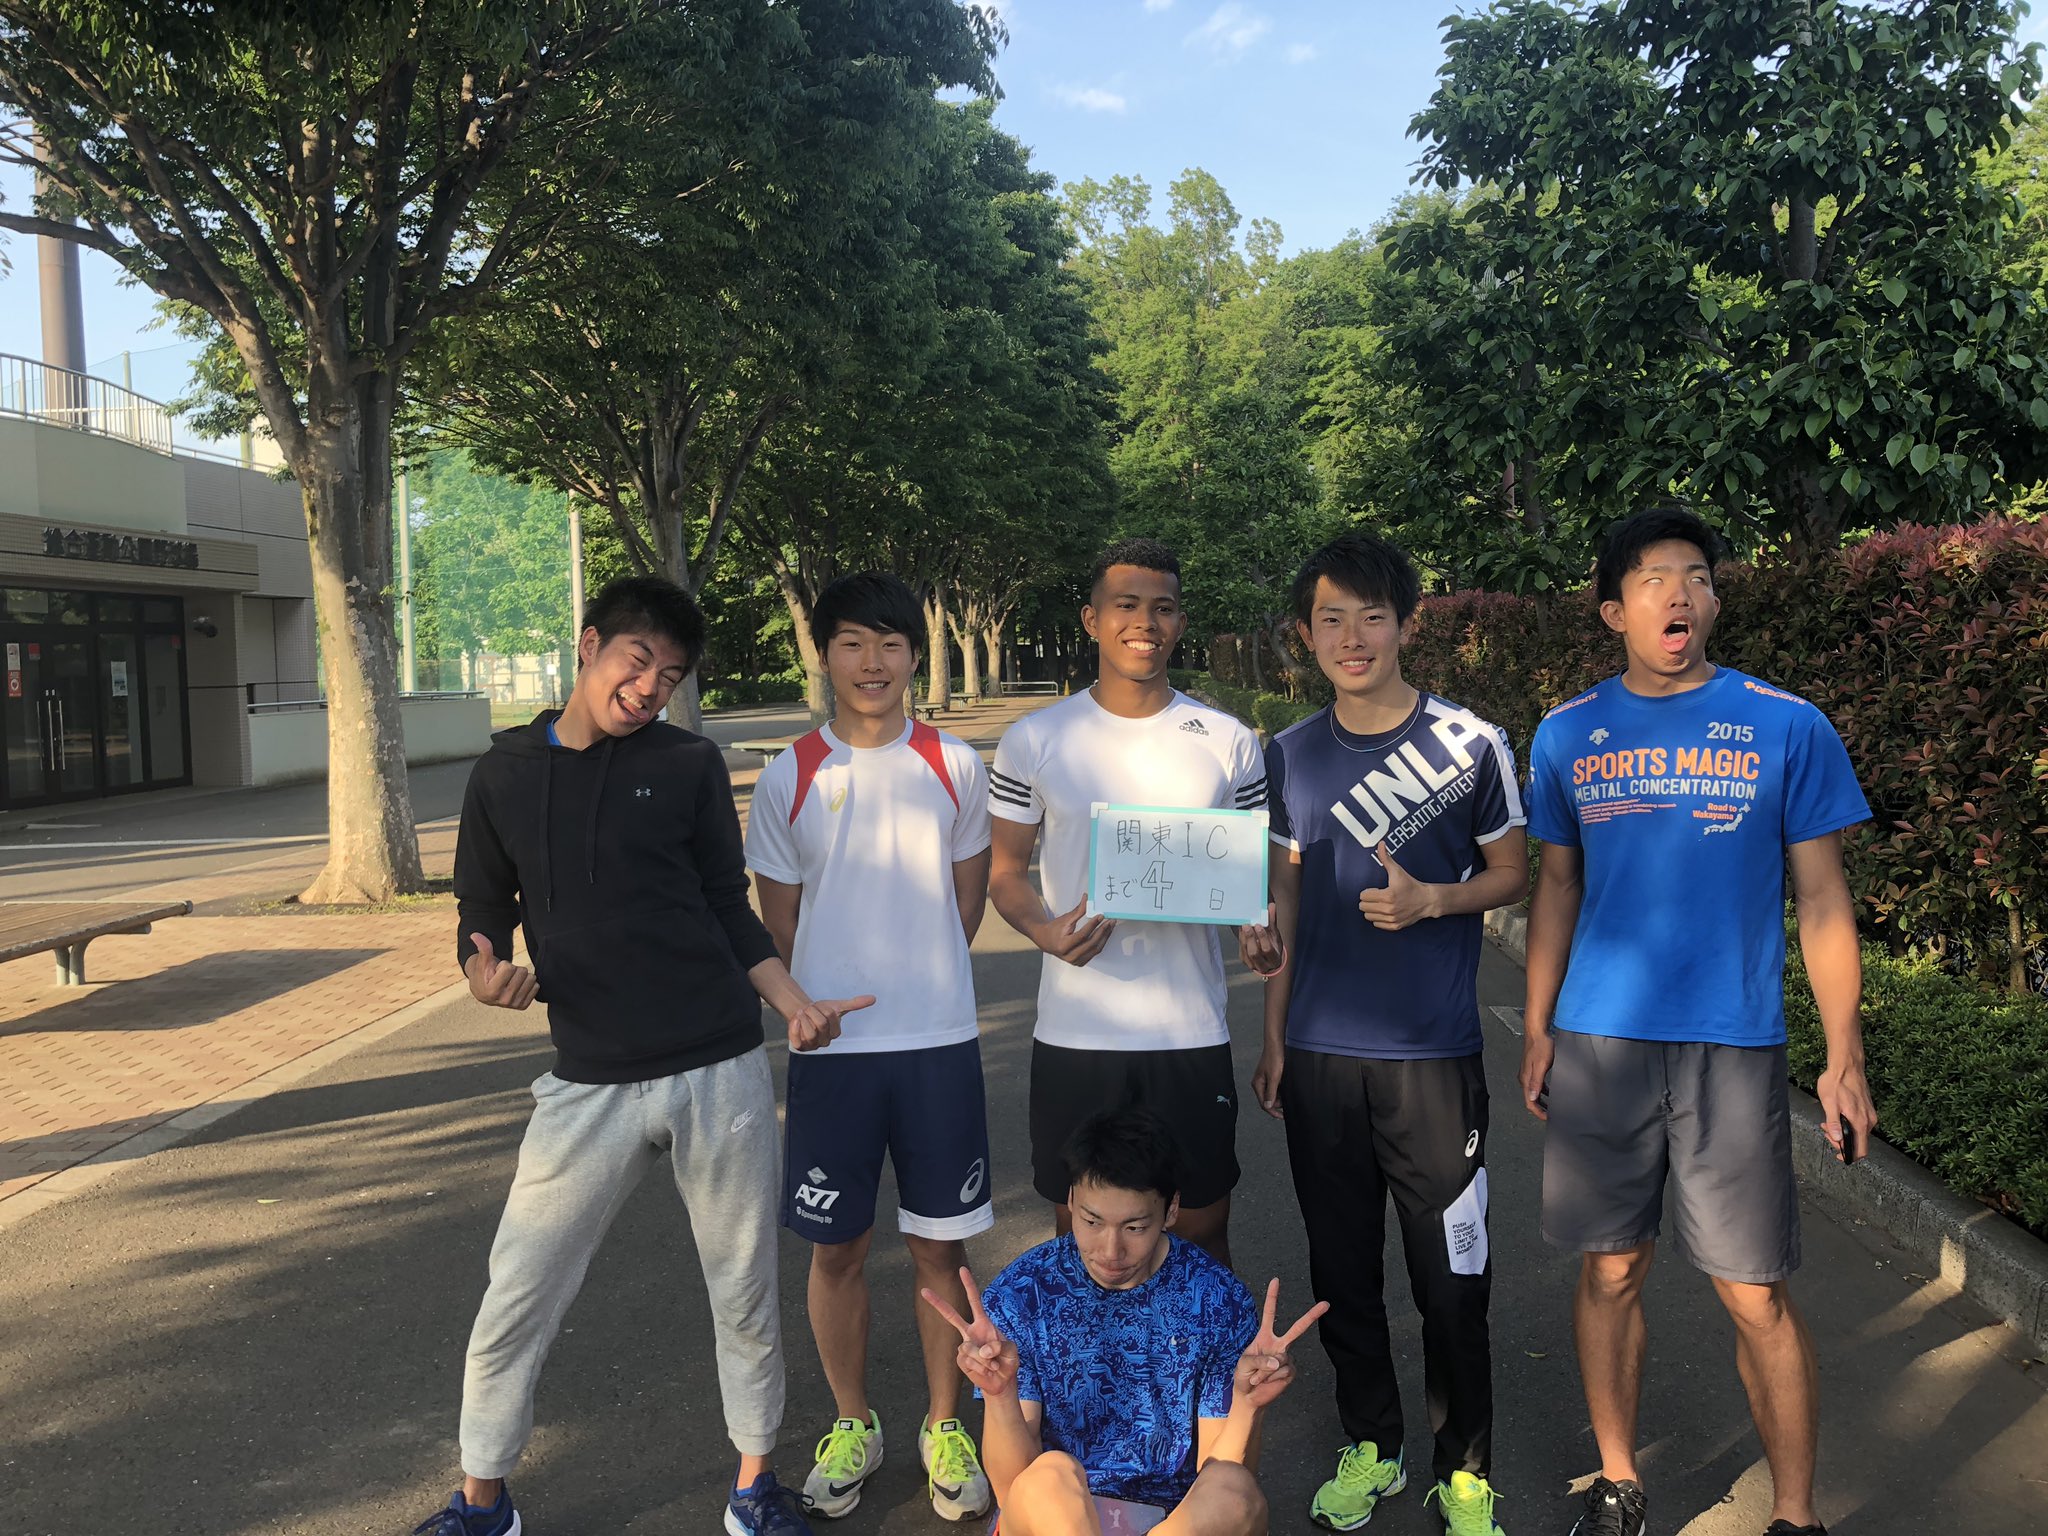 日本ウェルネススポーツ大学陸上競技部 (@JAPANwellnes) / Twitter